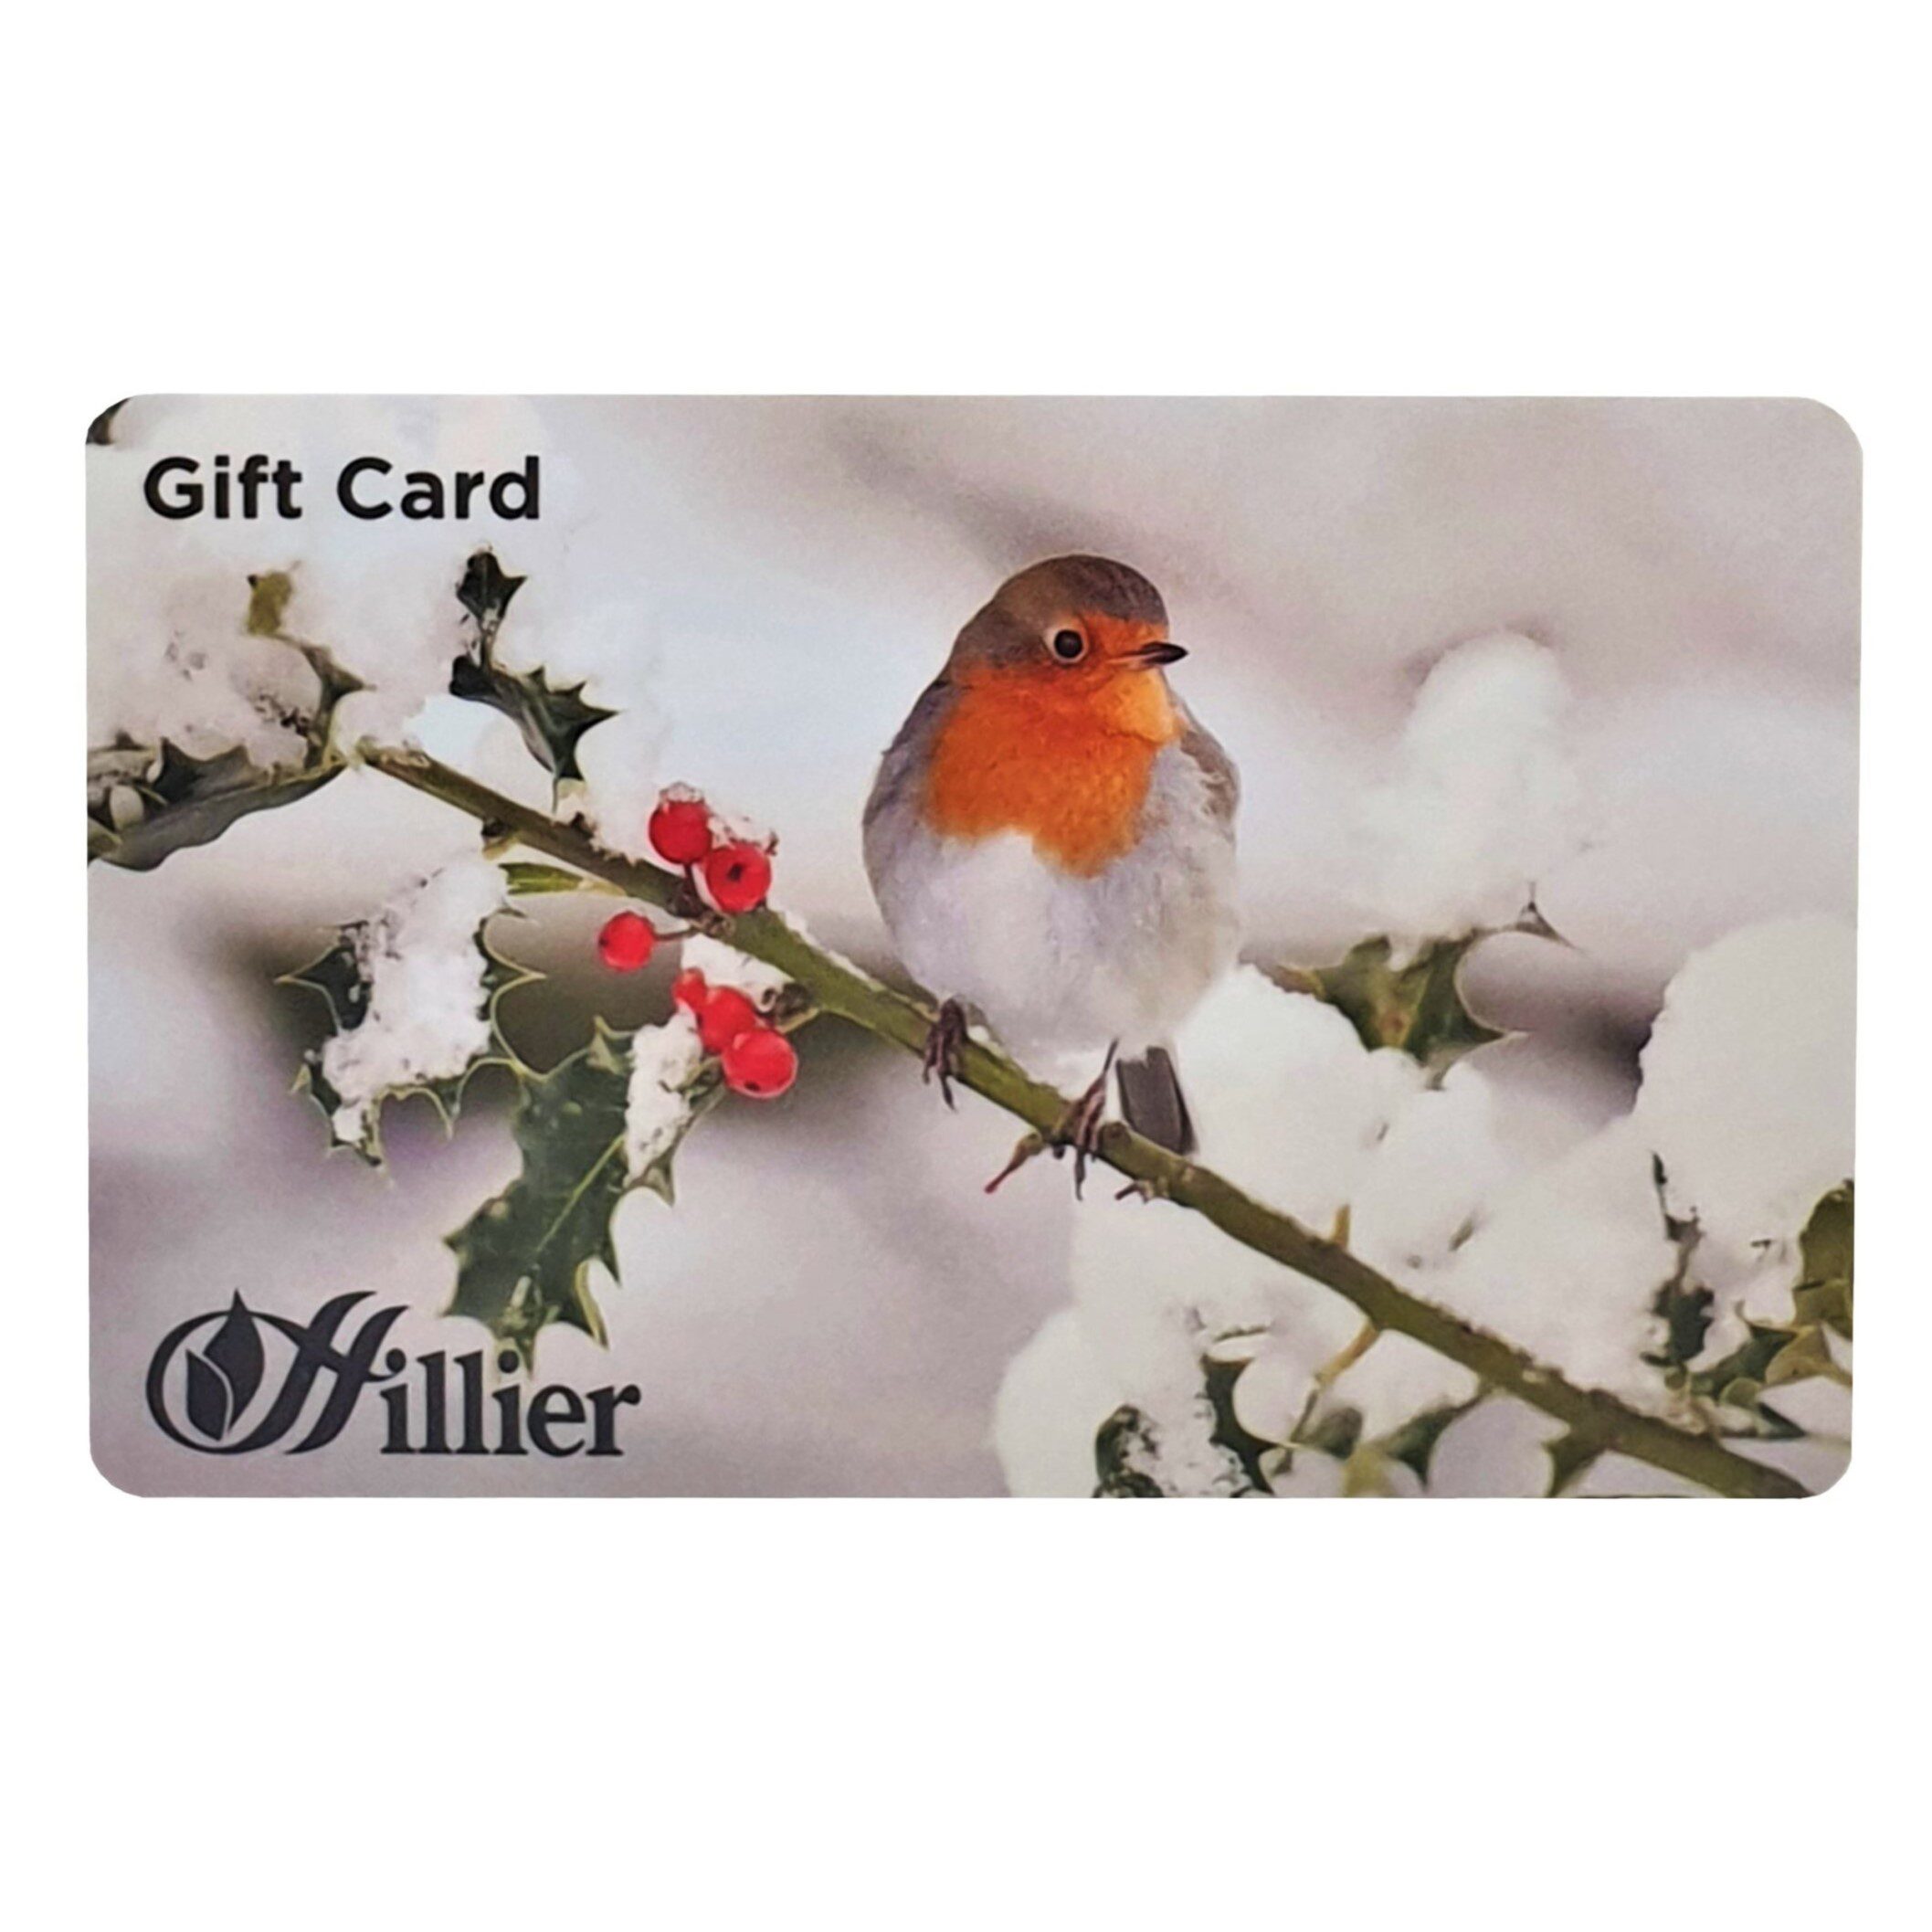 00251128 Gift Card Robin